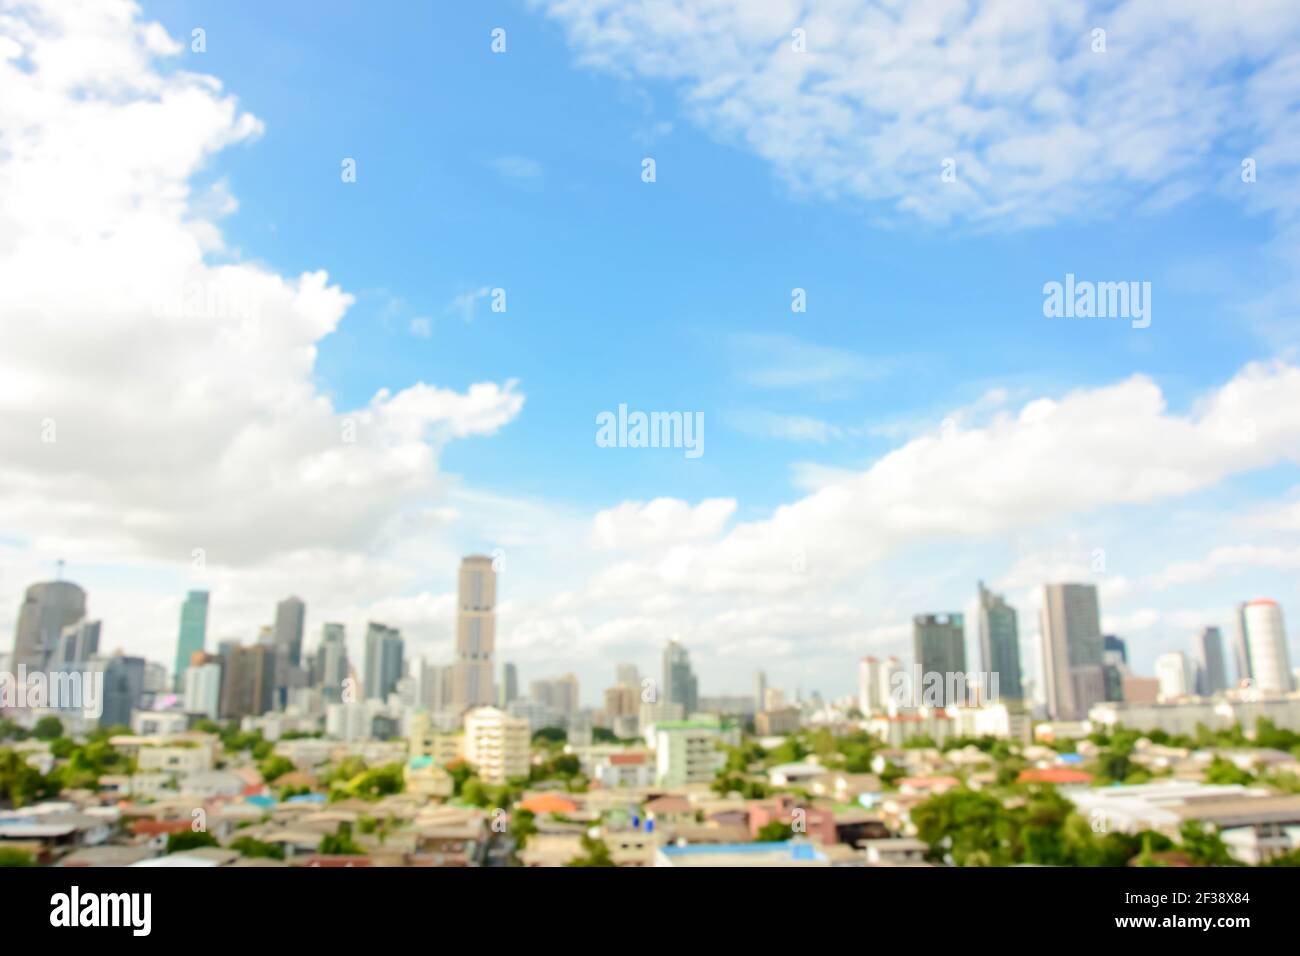 Verschwommenes Bild von Gebäuden in der Stadt mit blauem Himmel und Wolken als Hintergrund - Bankgkok, Thailand Stockfoto